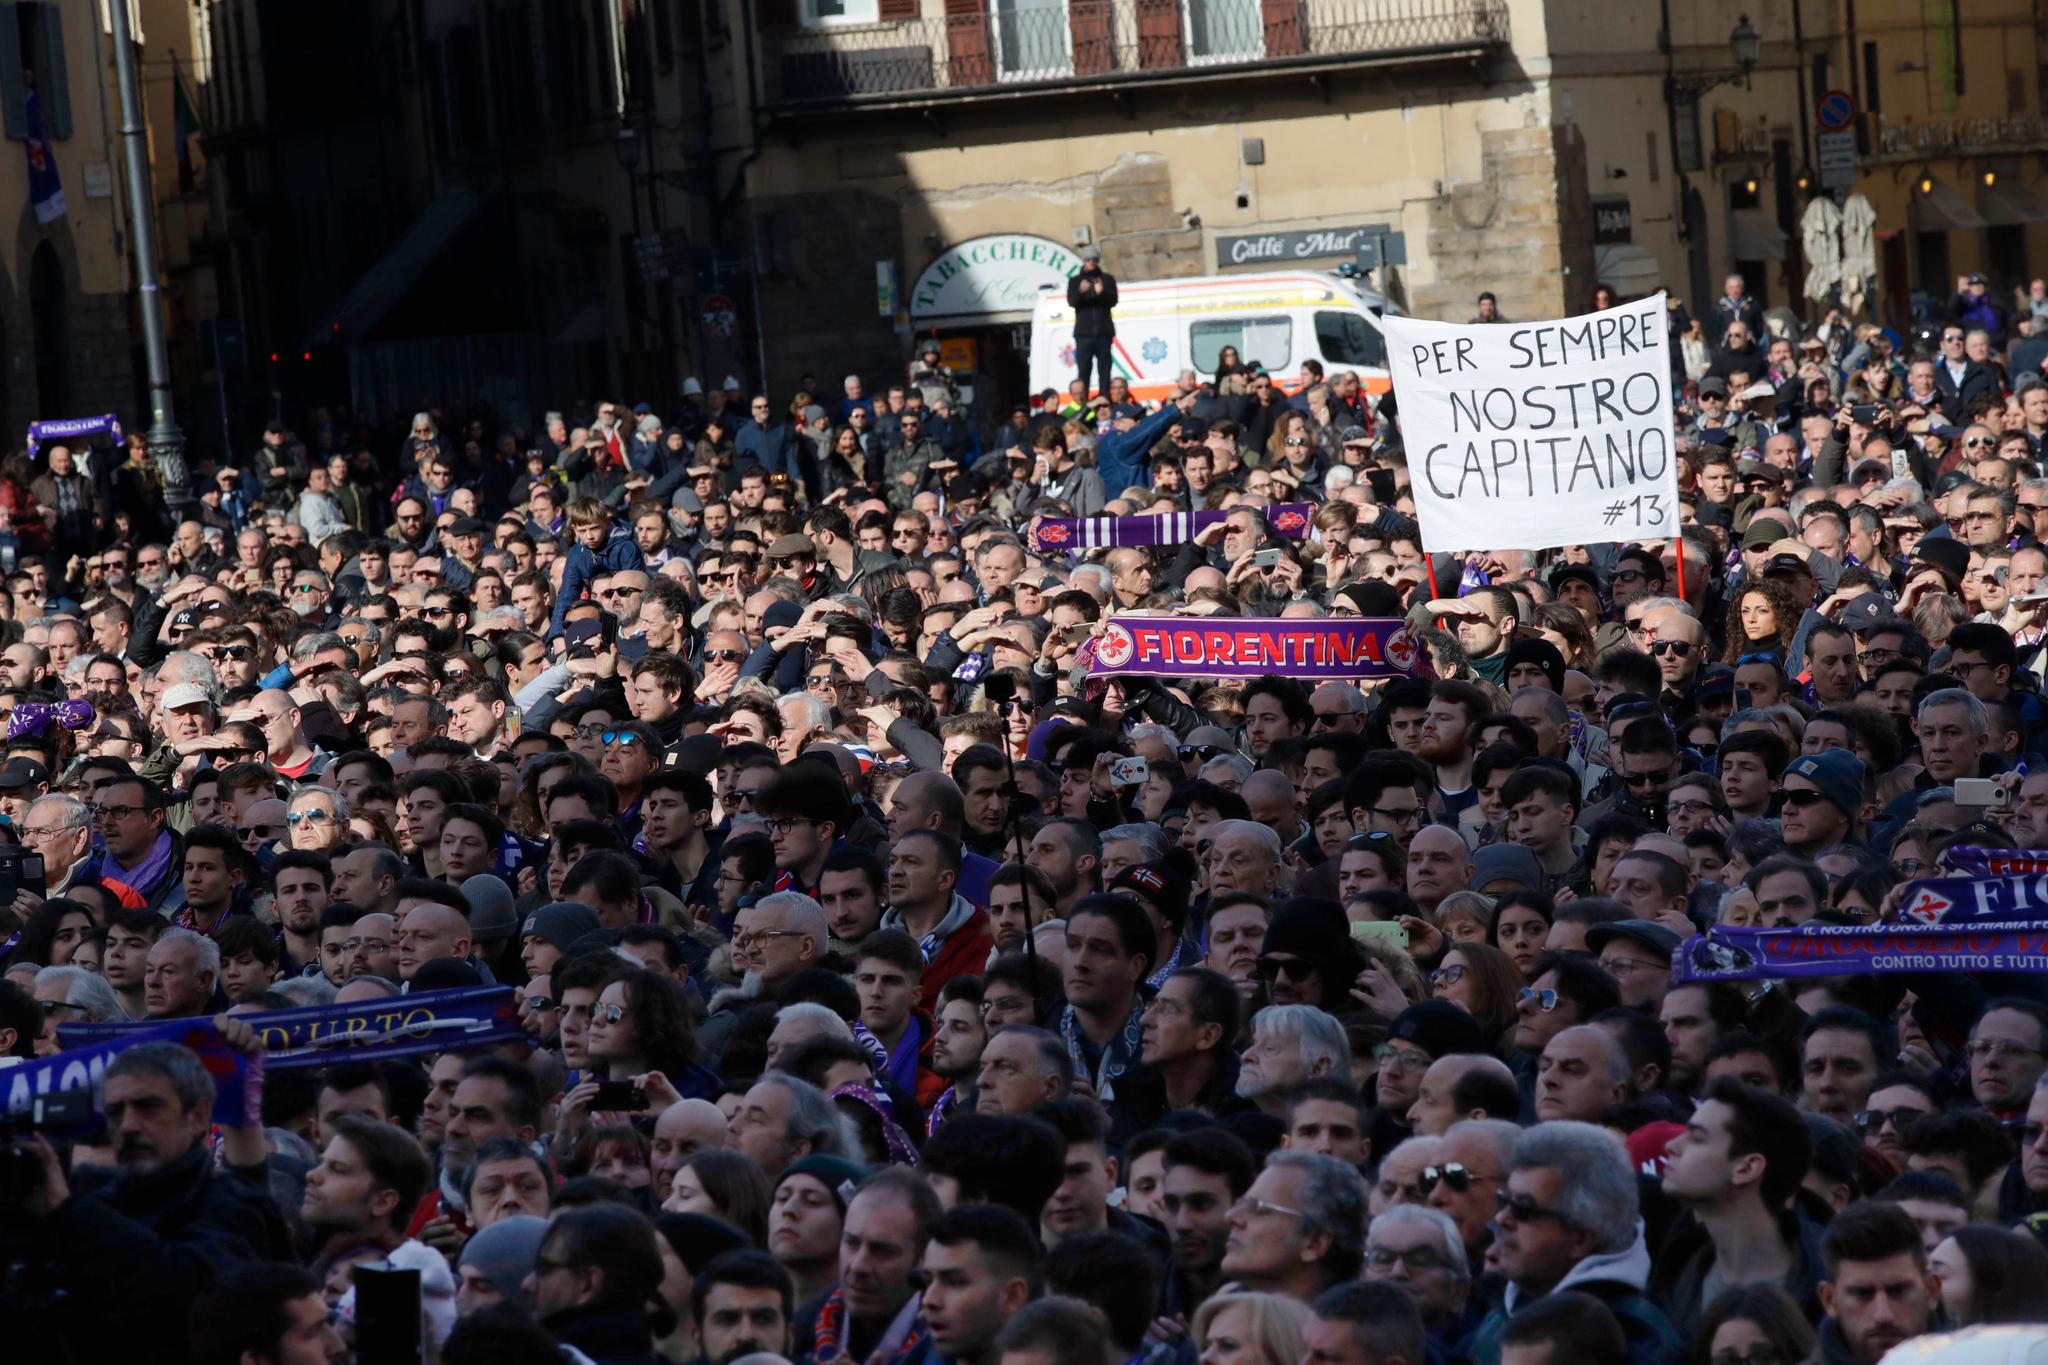 «For alltid vår kaptein», sto det på et banner i folkemengden i Firenze.